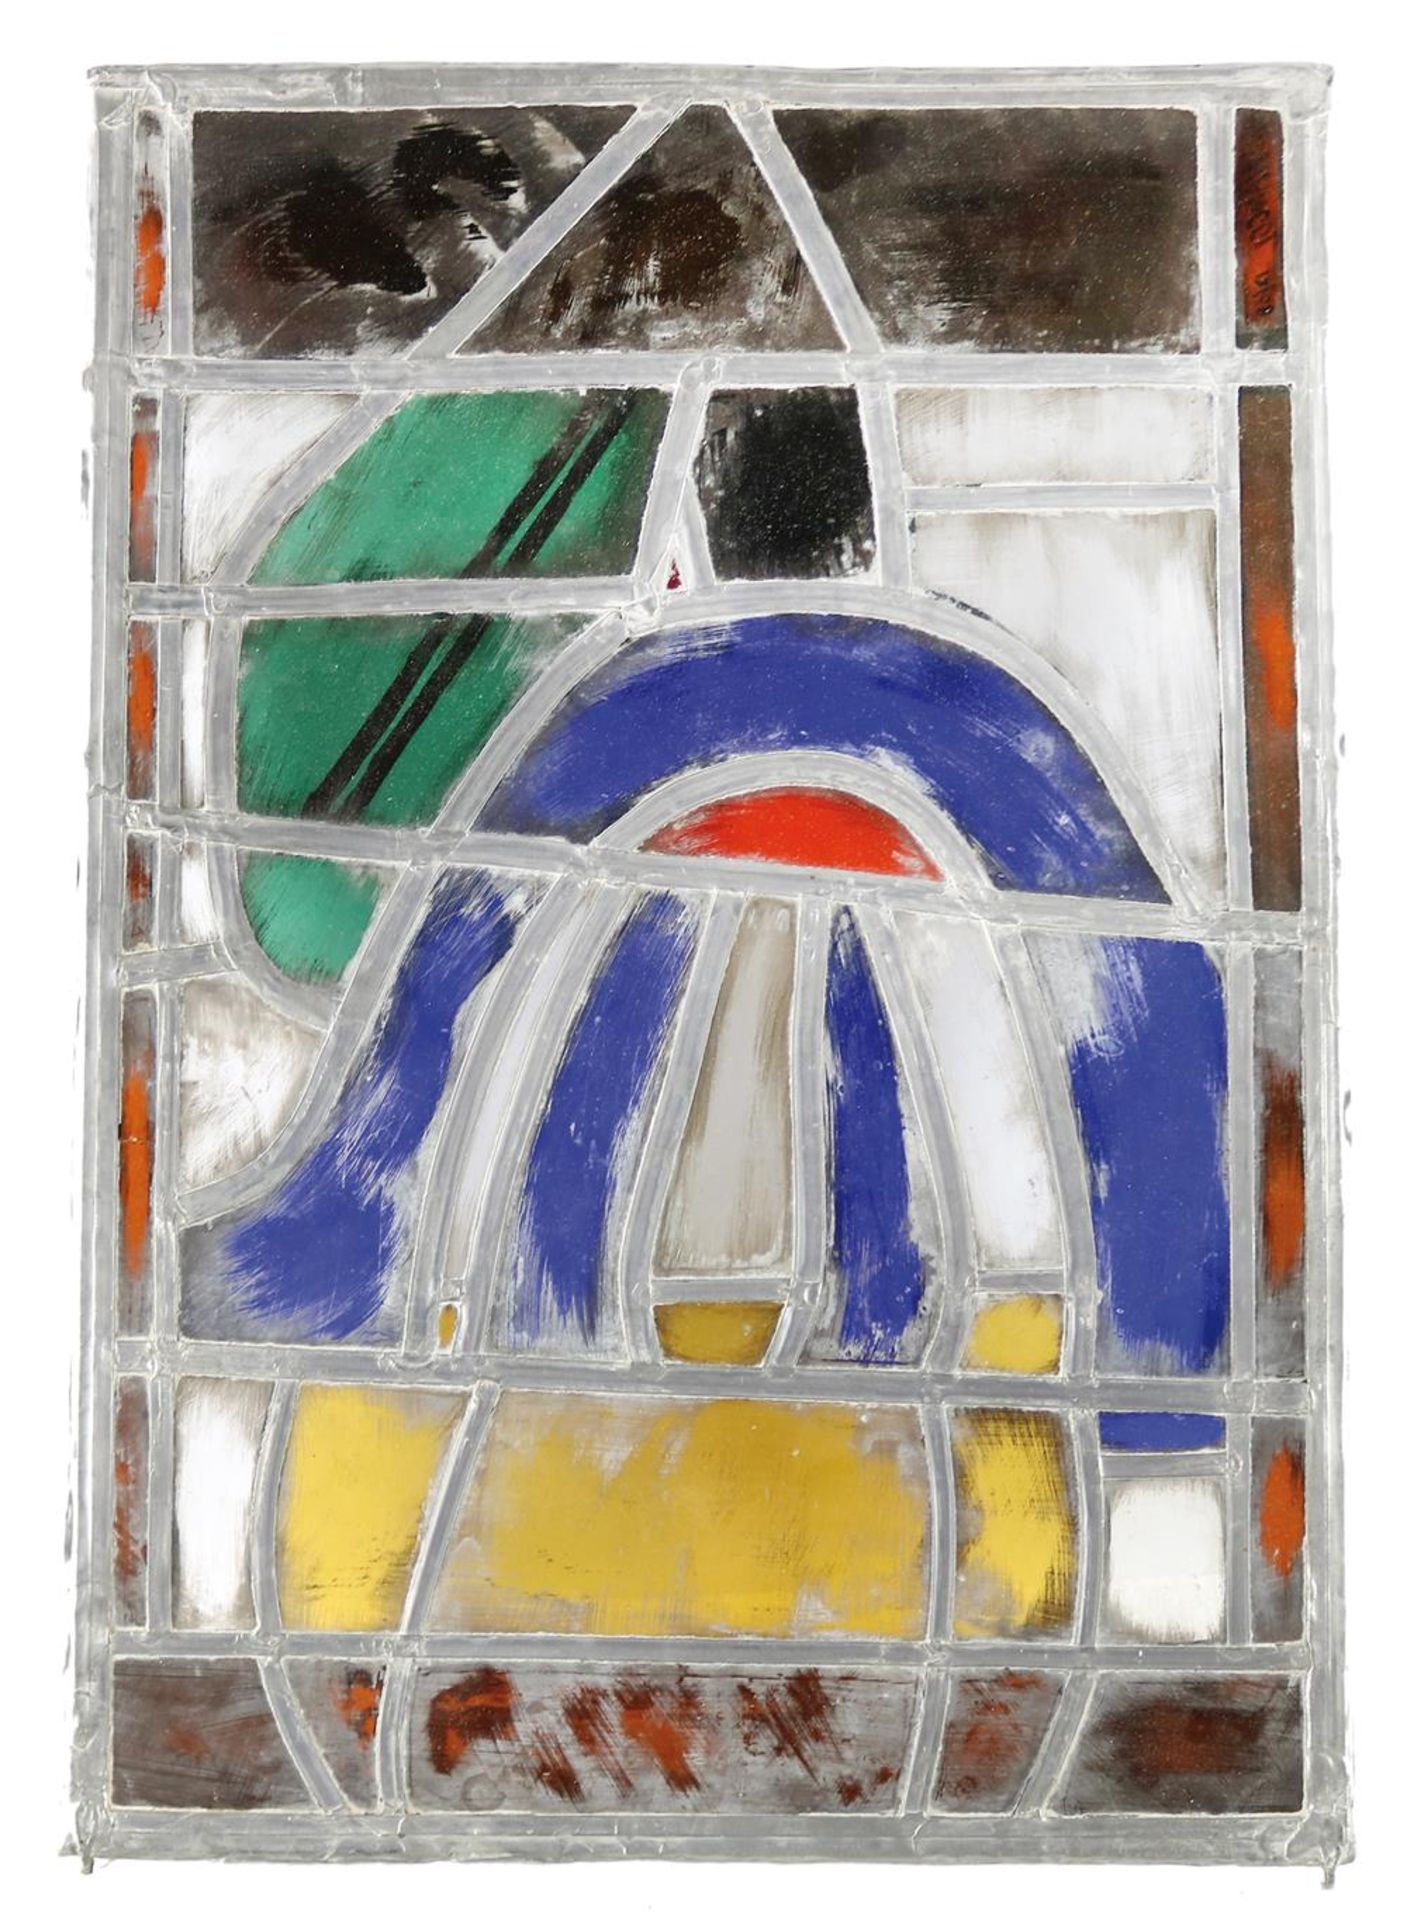 SammlungSammlung von 14 versch. Bleiverglasungen. Bleigefaßte polychrome Glasplatten iSamm - Image 3 of 3